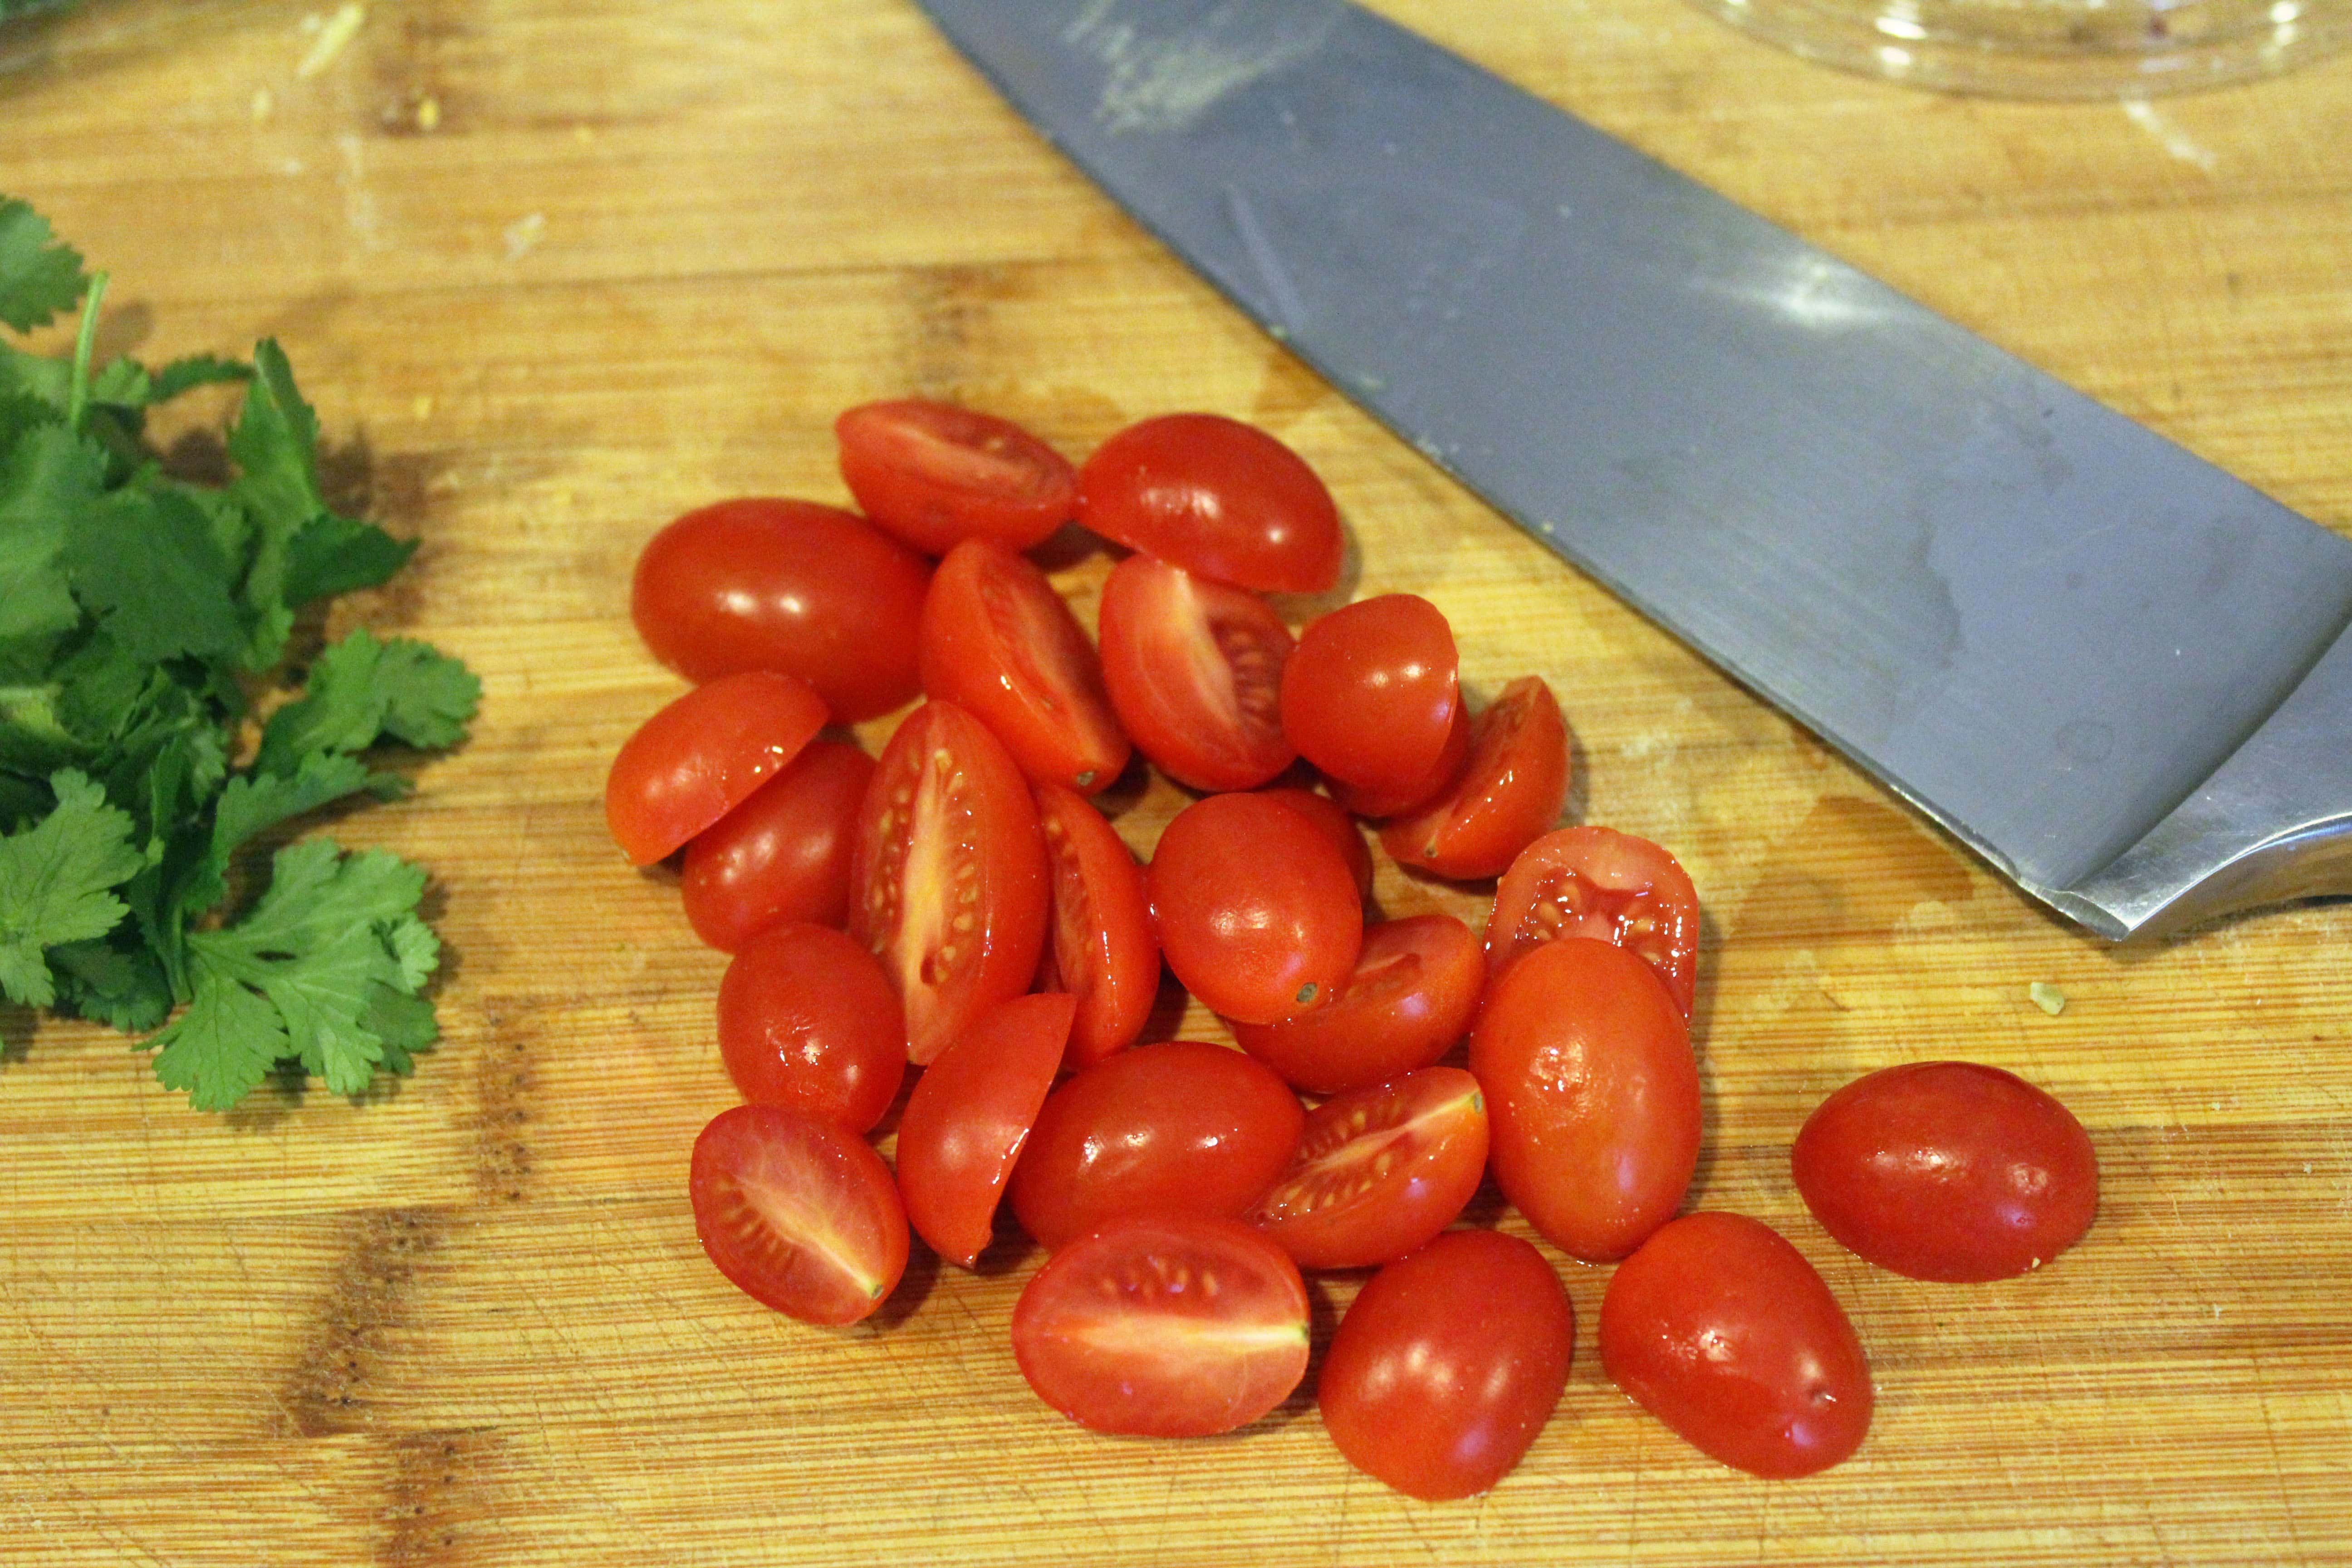 Halve tomatoes